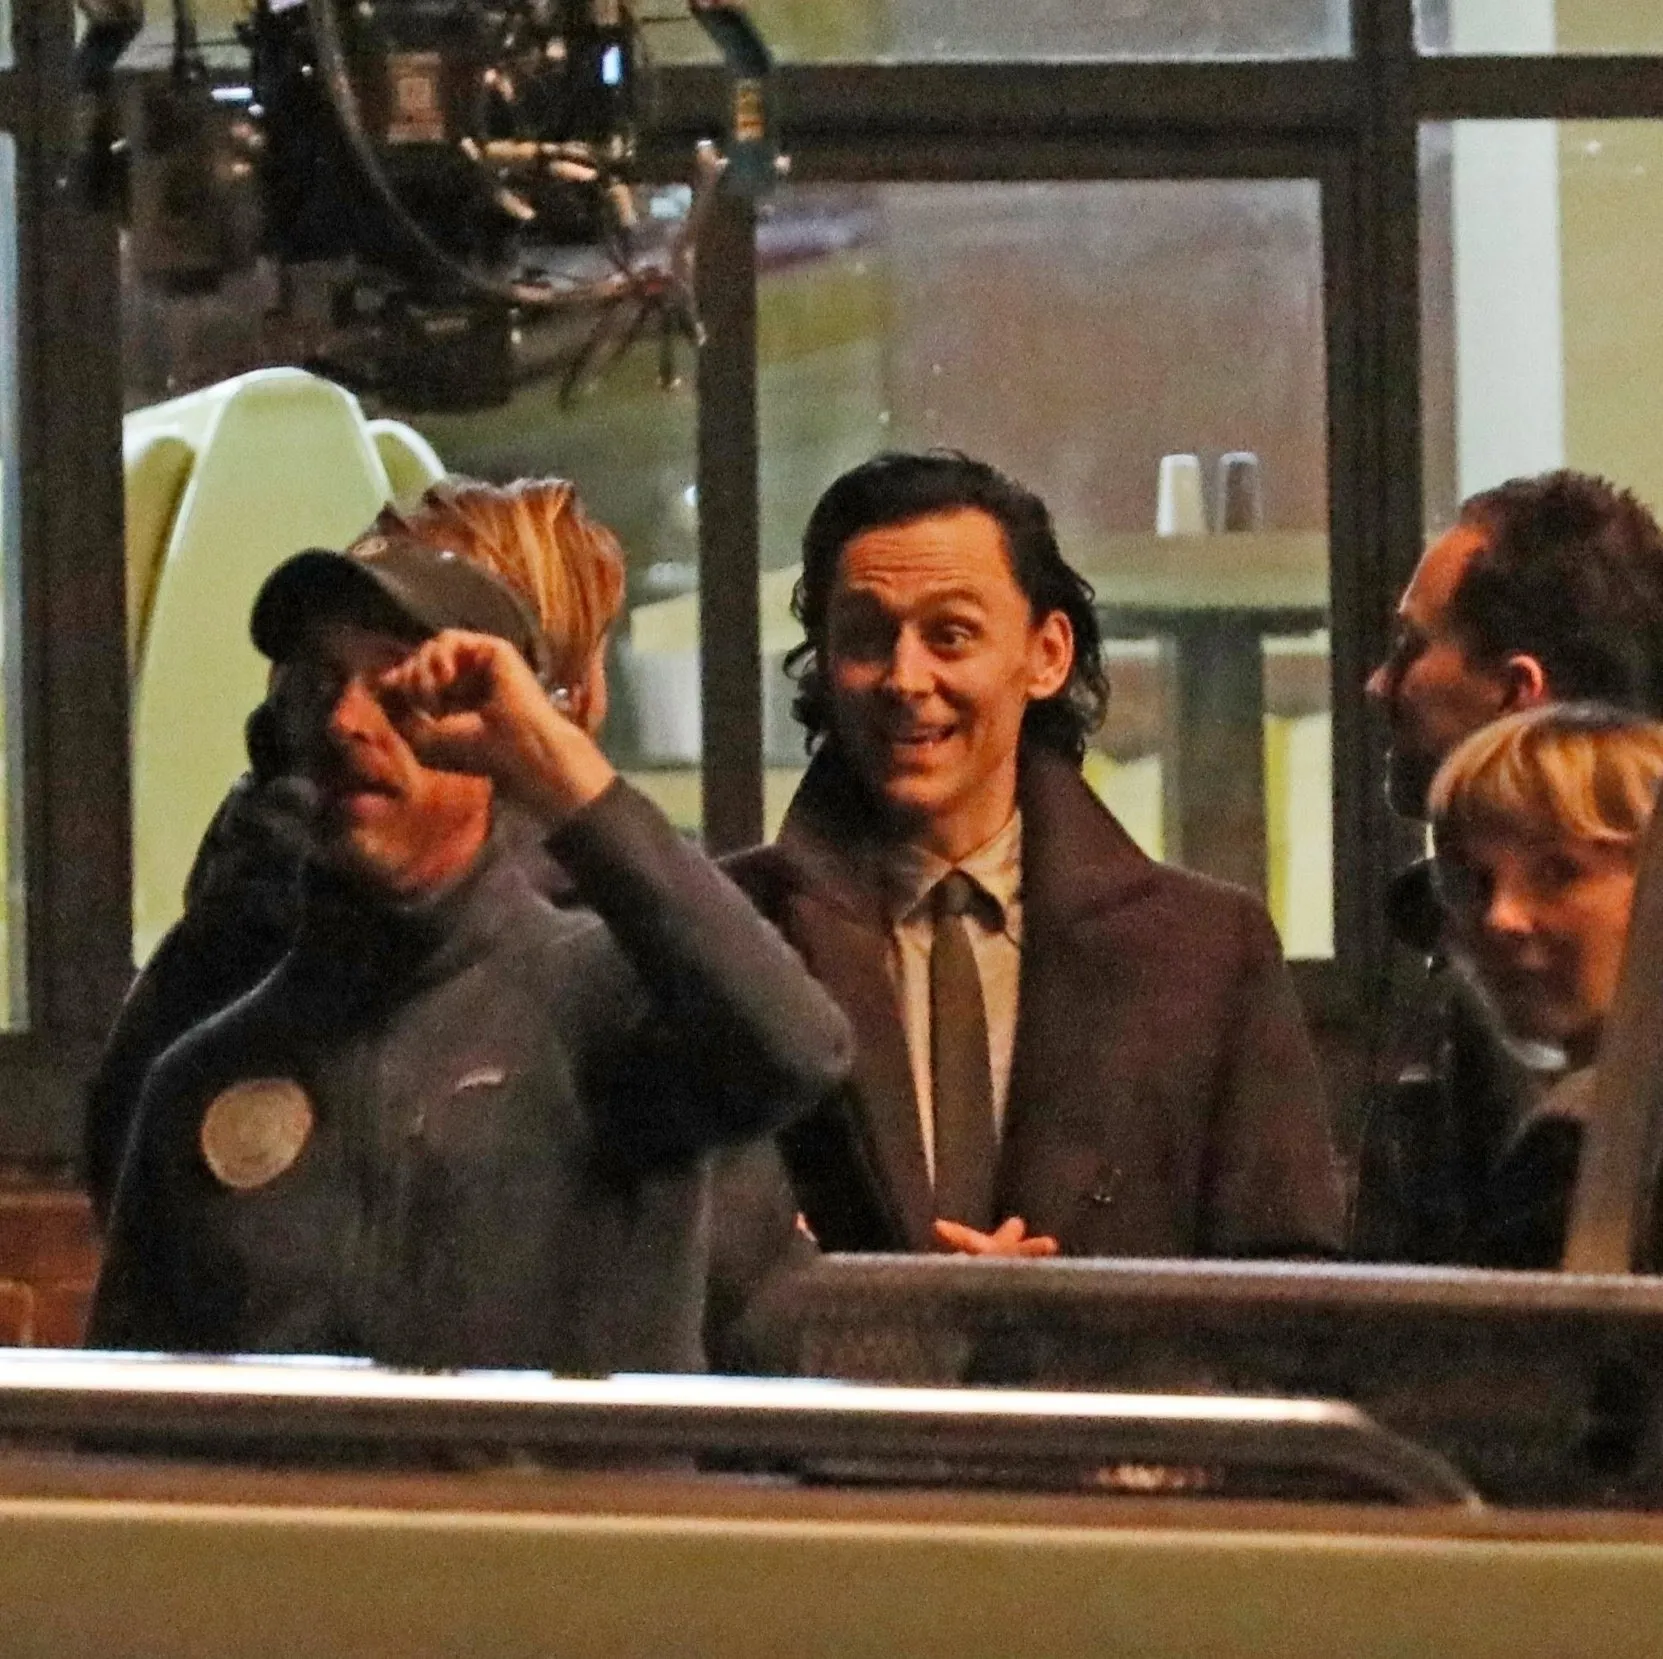 'Loki Season 2' reveals new set photos, Tom Hiddleston's smile is infectious | FMV6